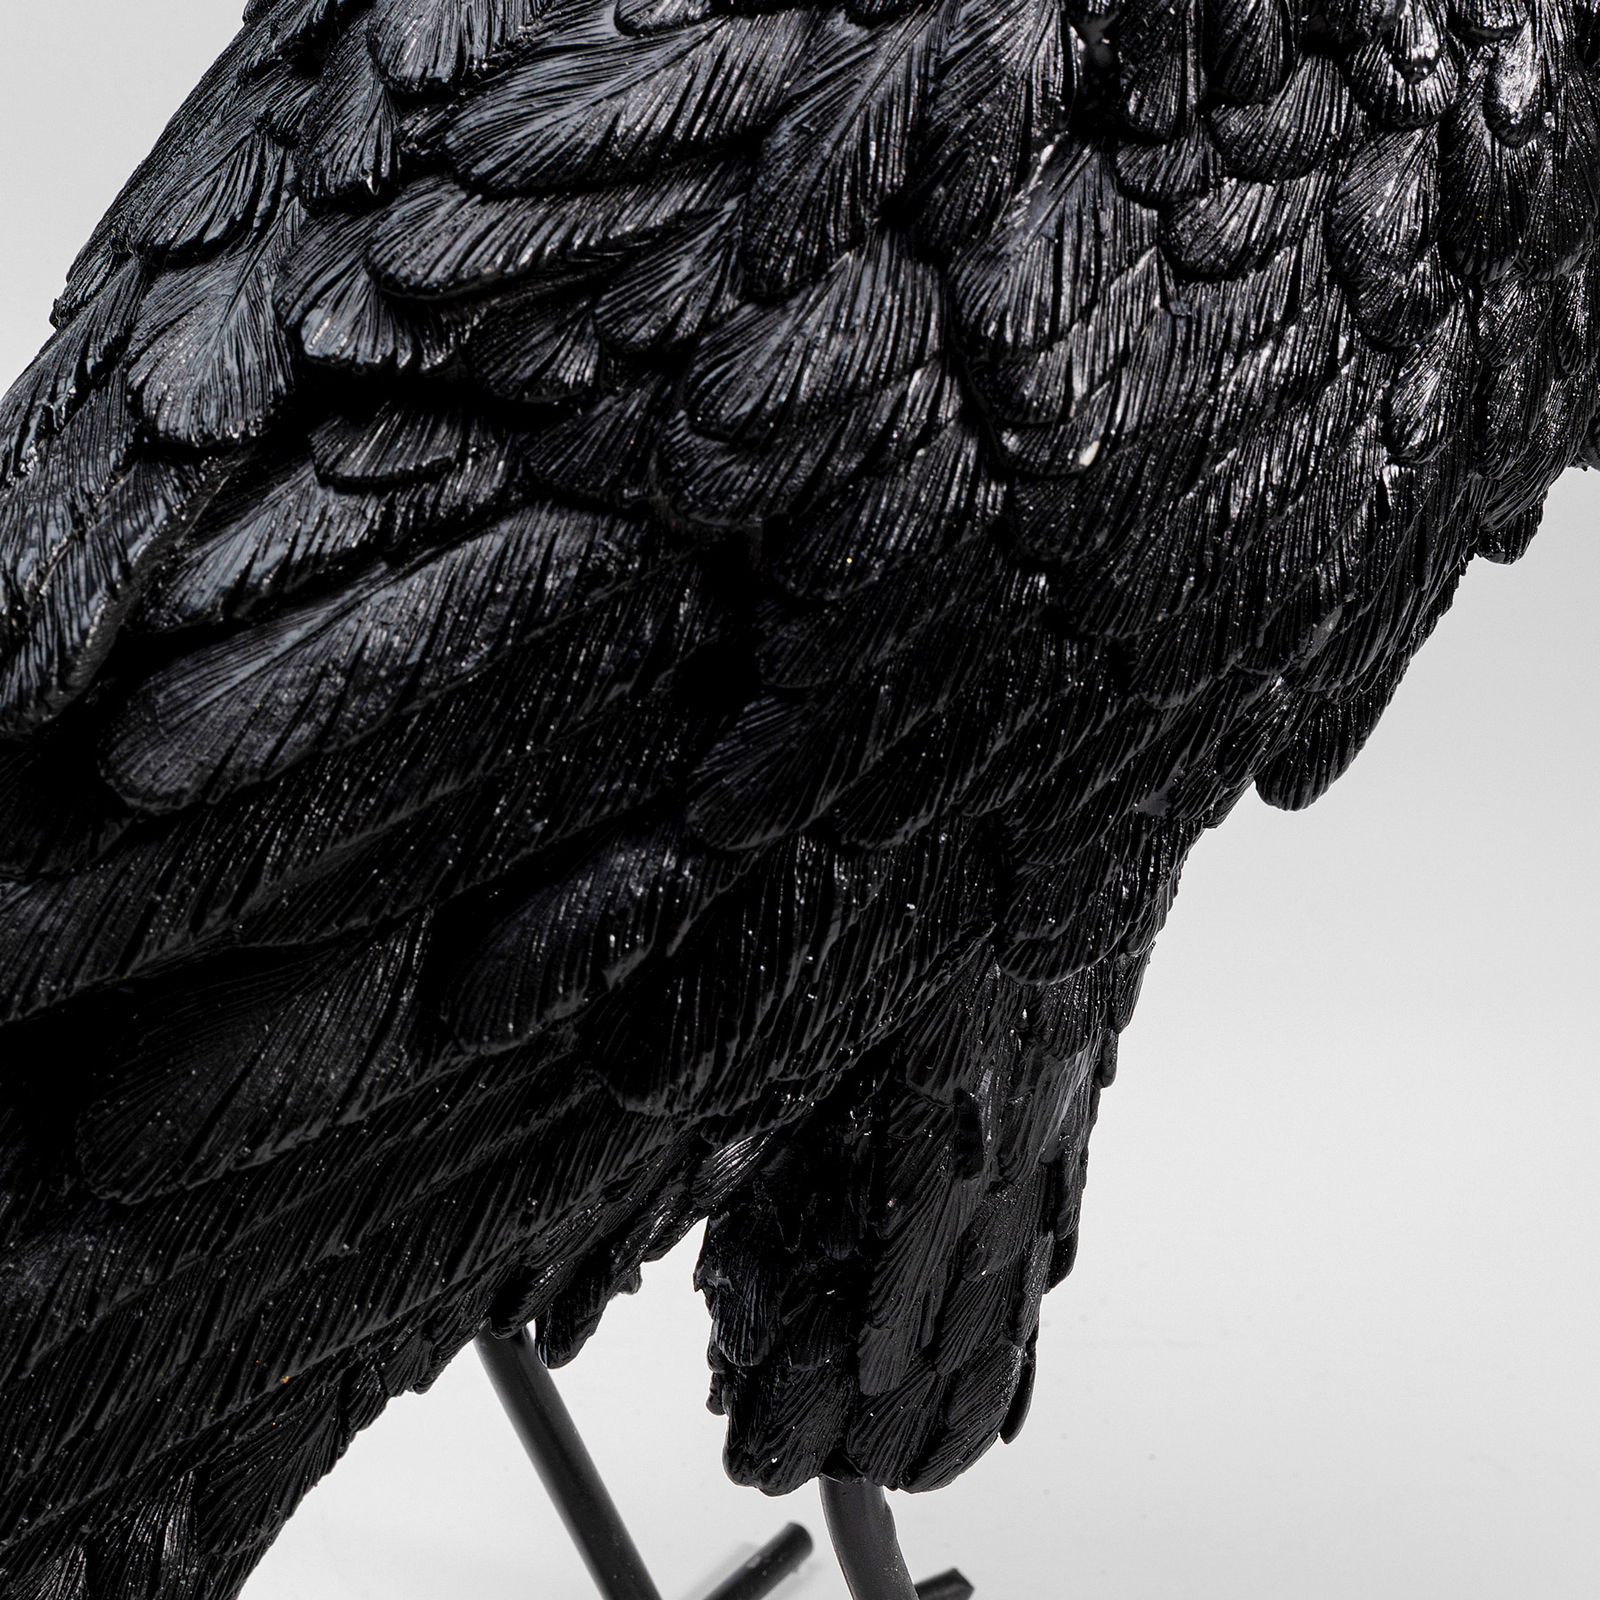 KARE Animal Crow lampe à poser forme de corbeau